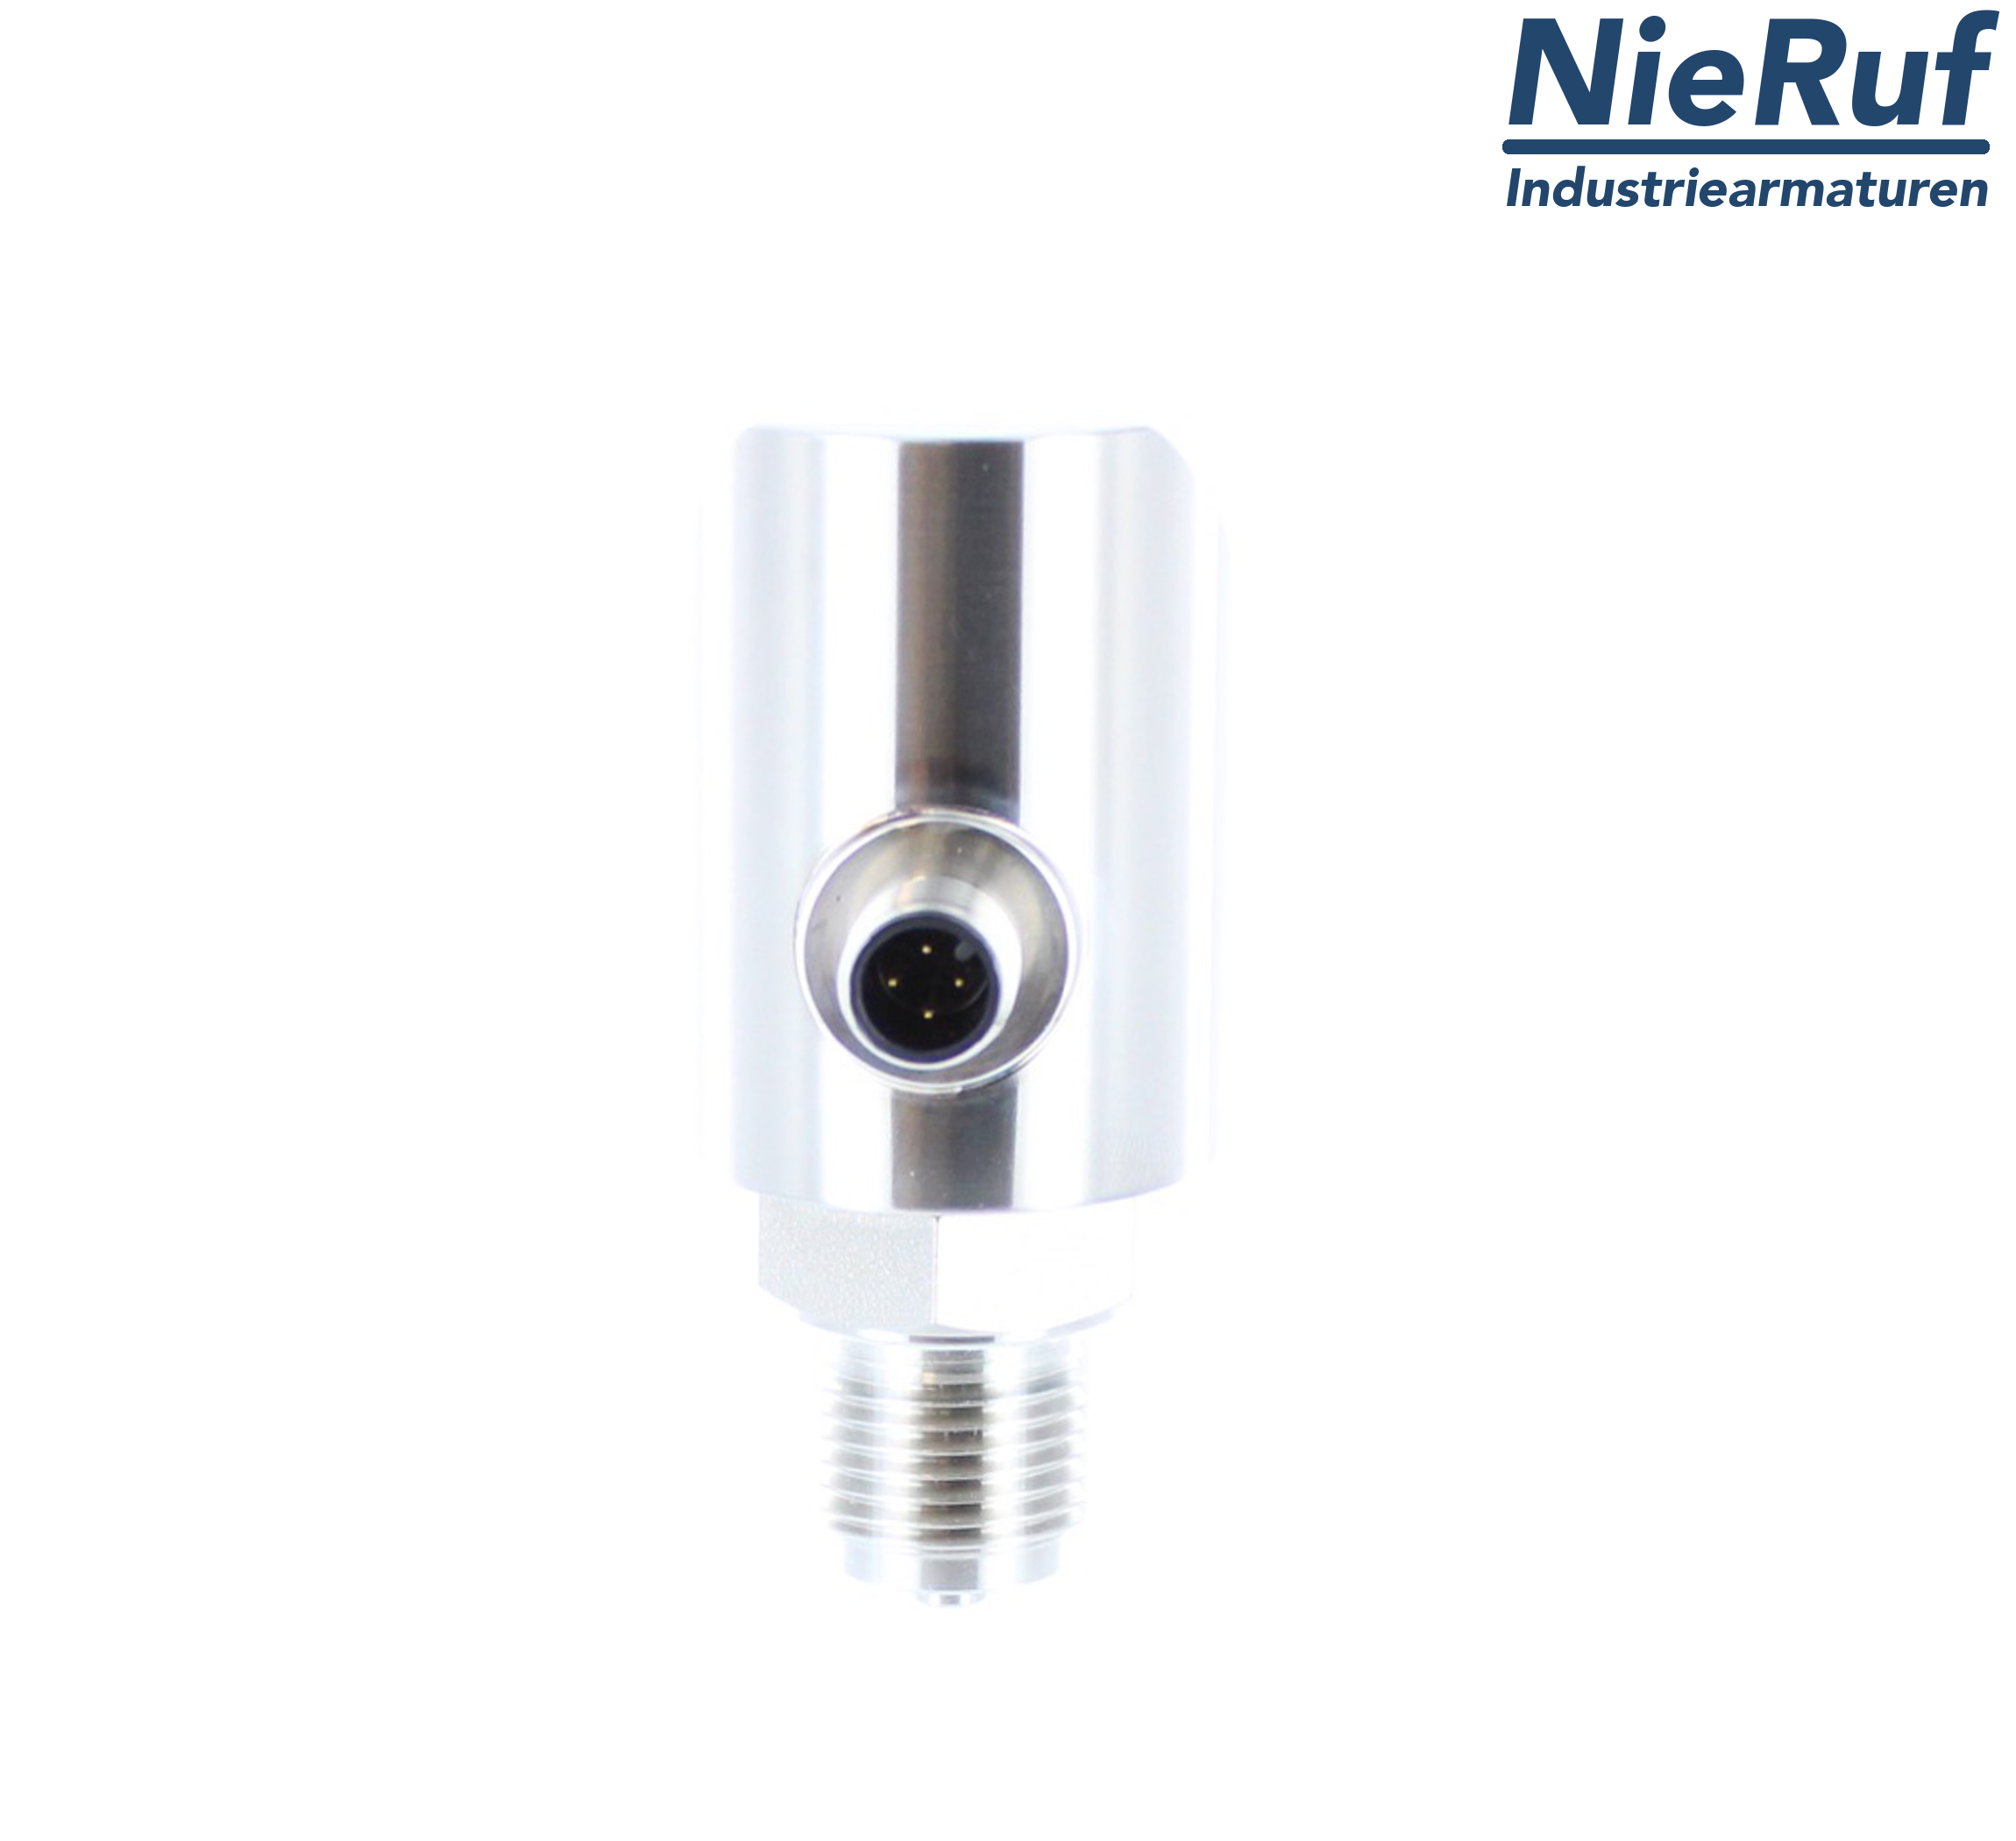 digital pressure sensor G 1/2" B 4-wire: 1xPNP, 1x4 - 20mA, Desina FPM 0,0 - 10,0 bar